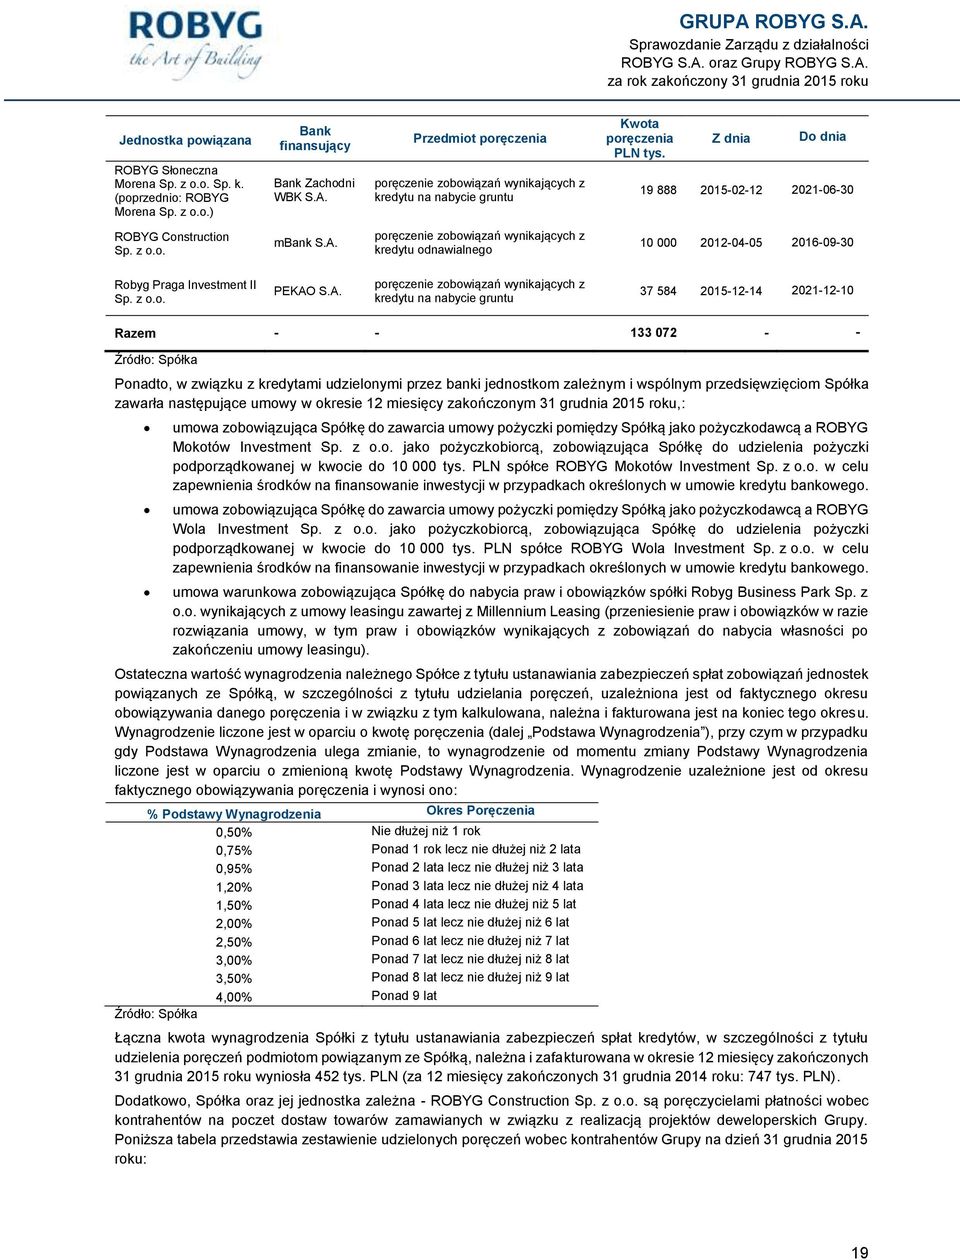 poręczenie zobowiązań wynikających z kredytu odnawialnego 10 000 2012-04-05 2016-09-30 Robyg Praga Investment II Sp. z o.o. PEKAO